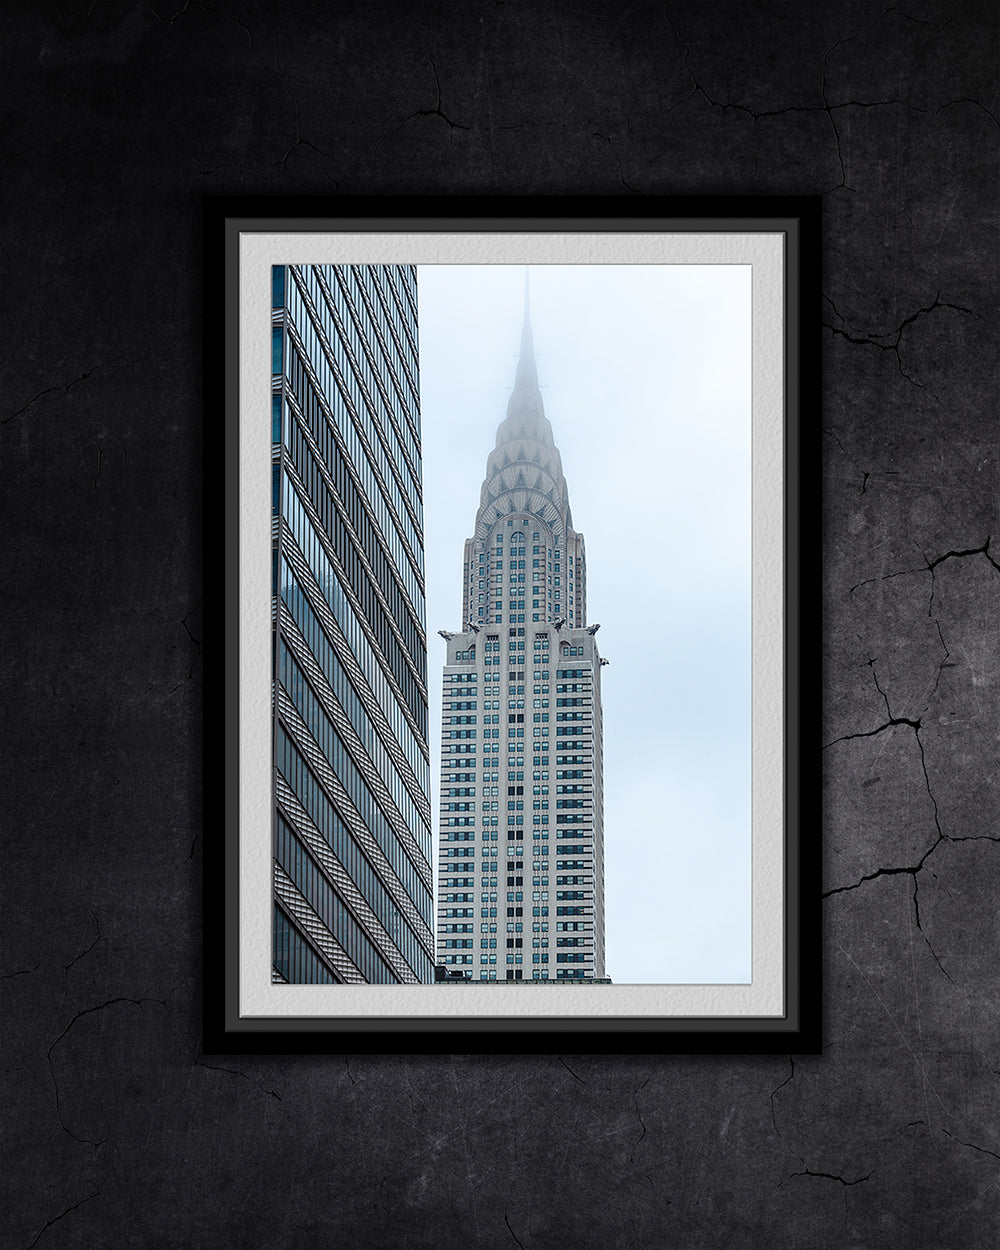 framed print of the Chrysler building in new york city